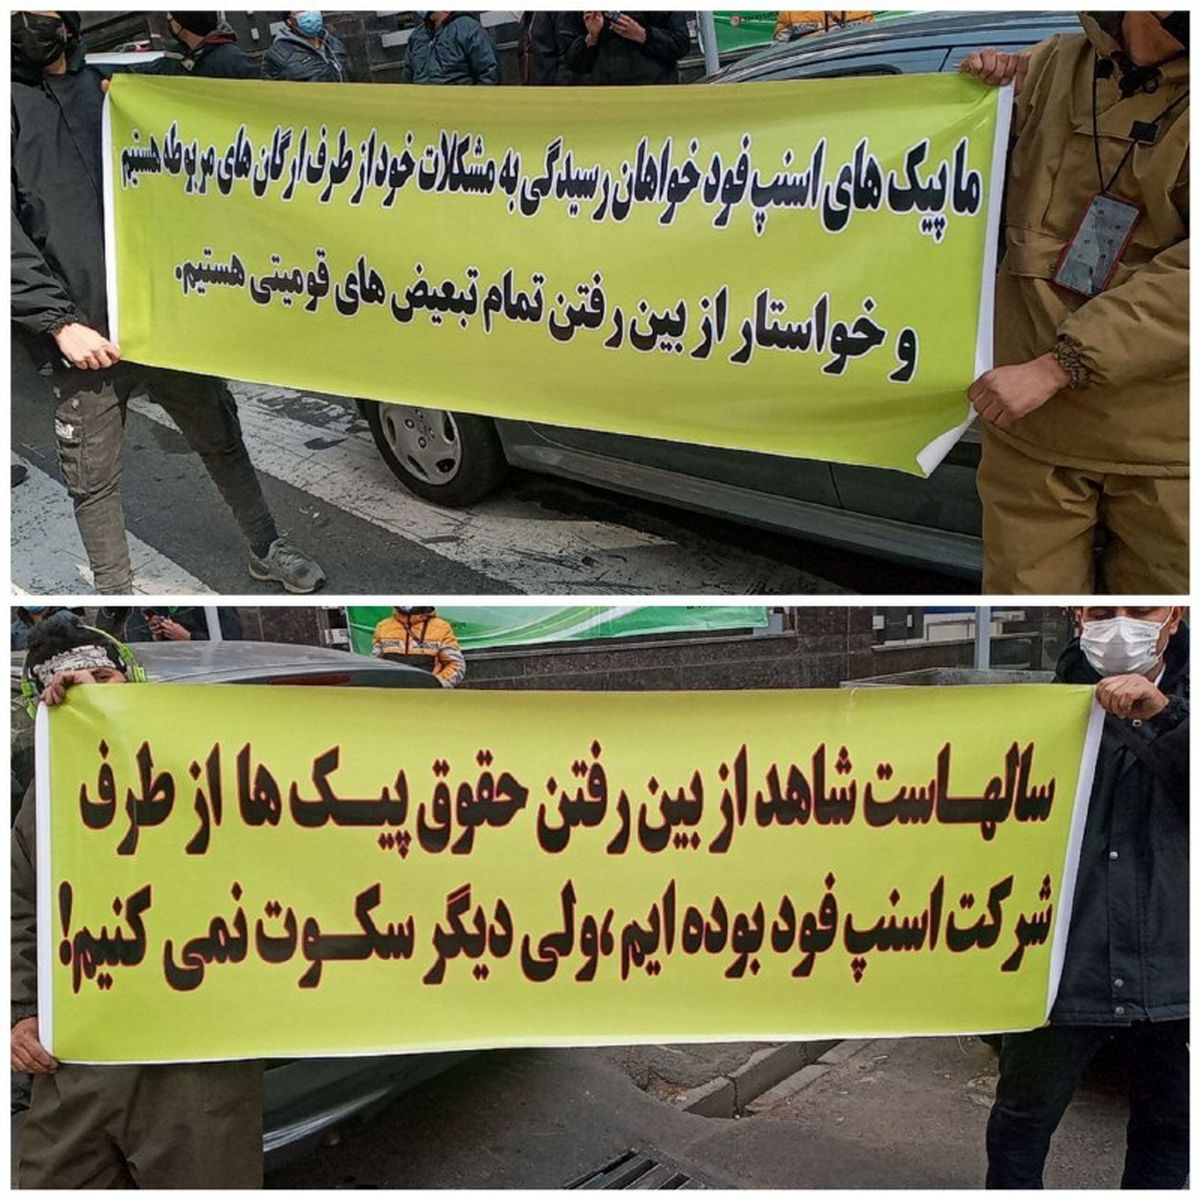 اعتراض پیک موتوری اسنپ مقابل دفتر این شرکت در تهران + عکس